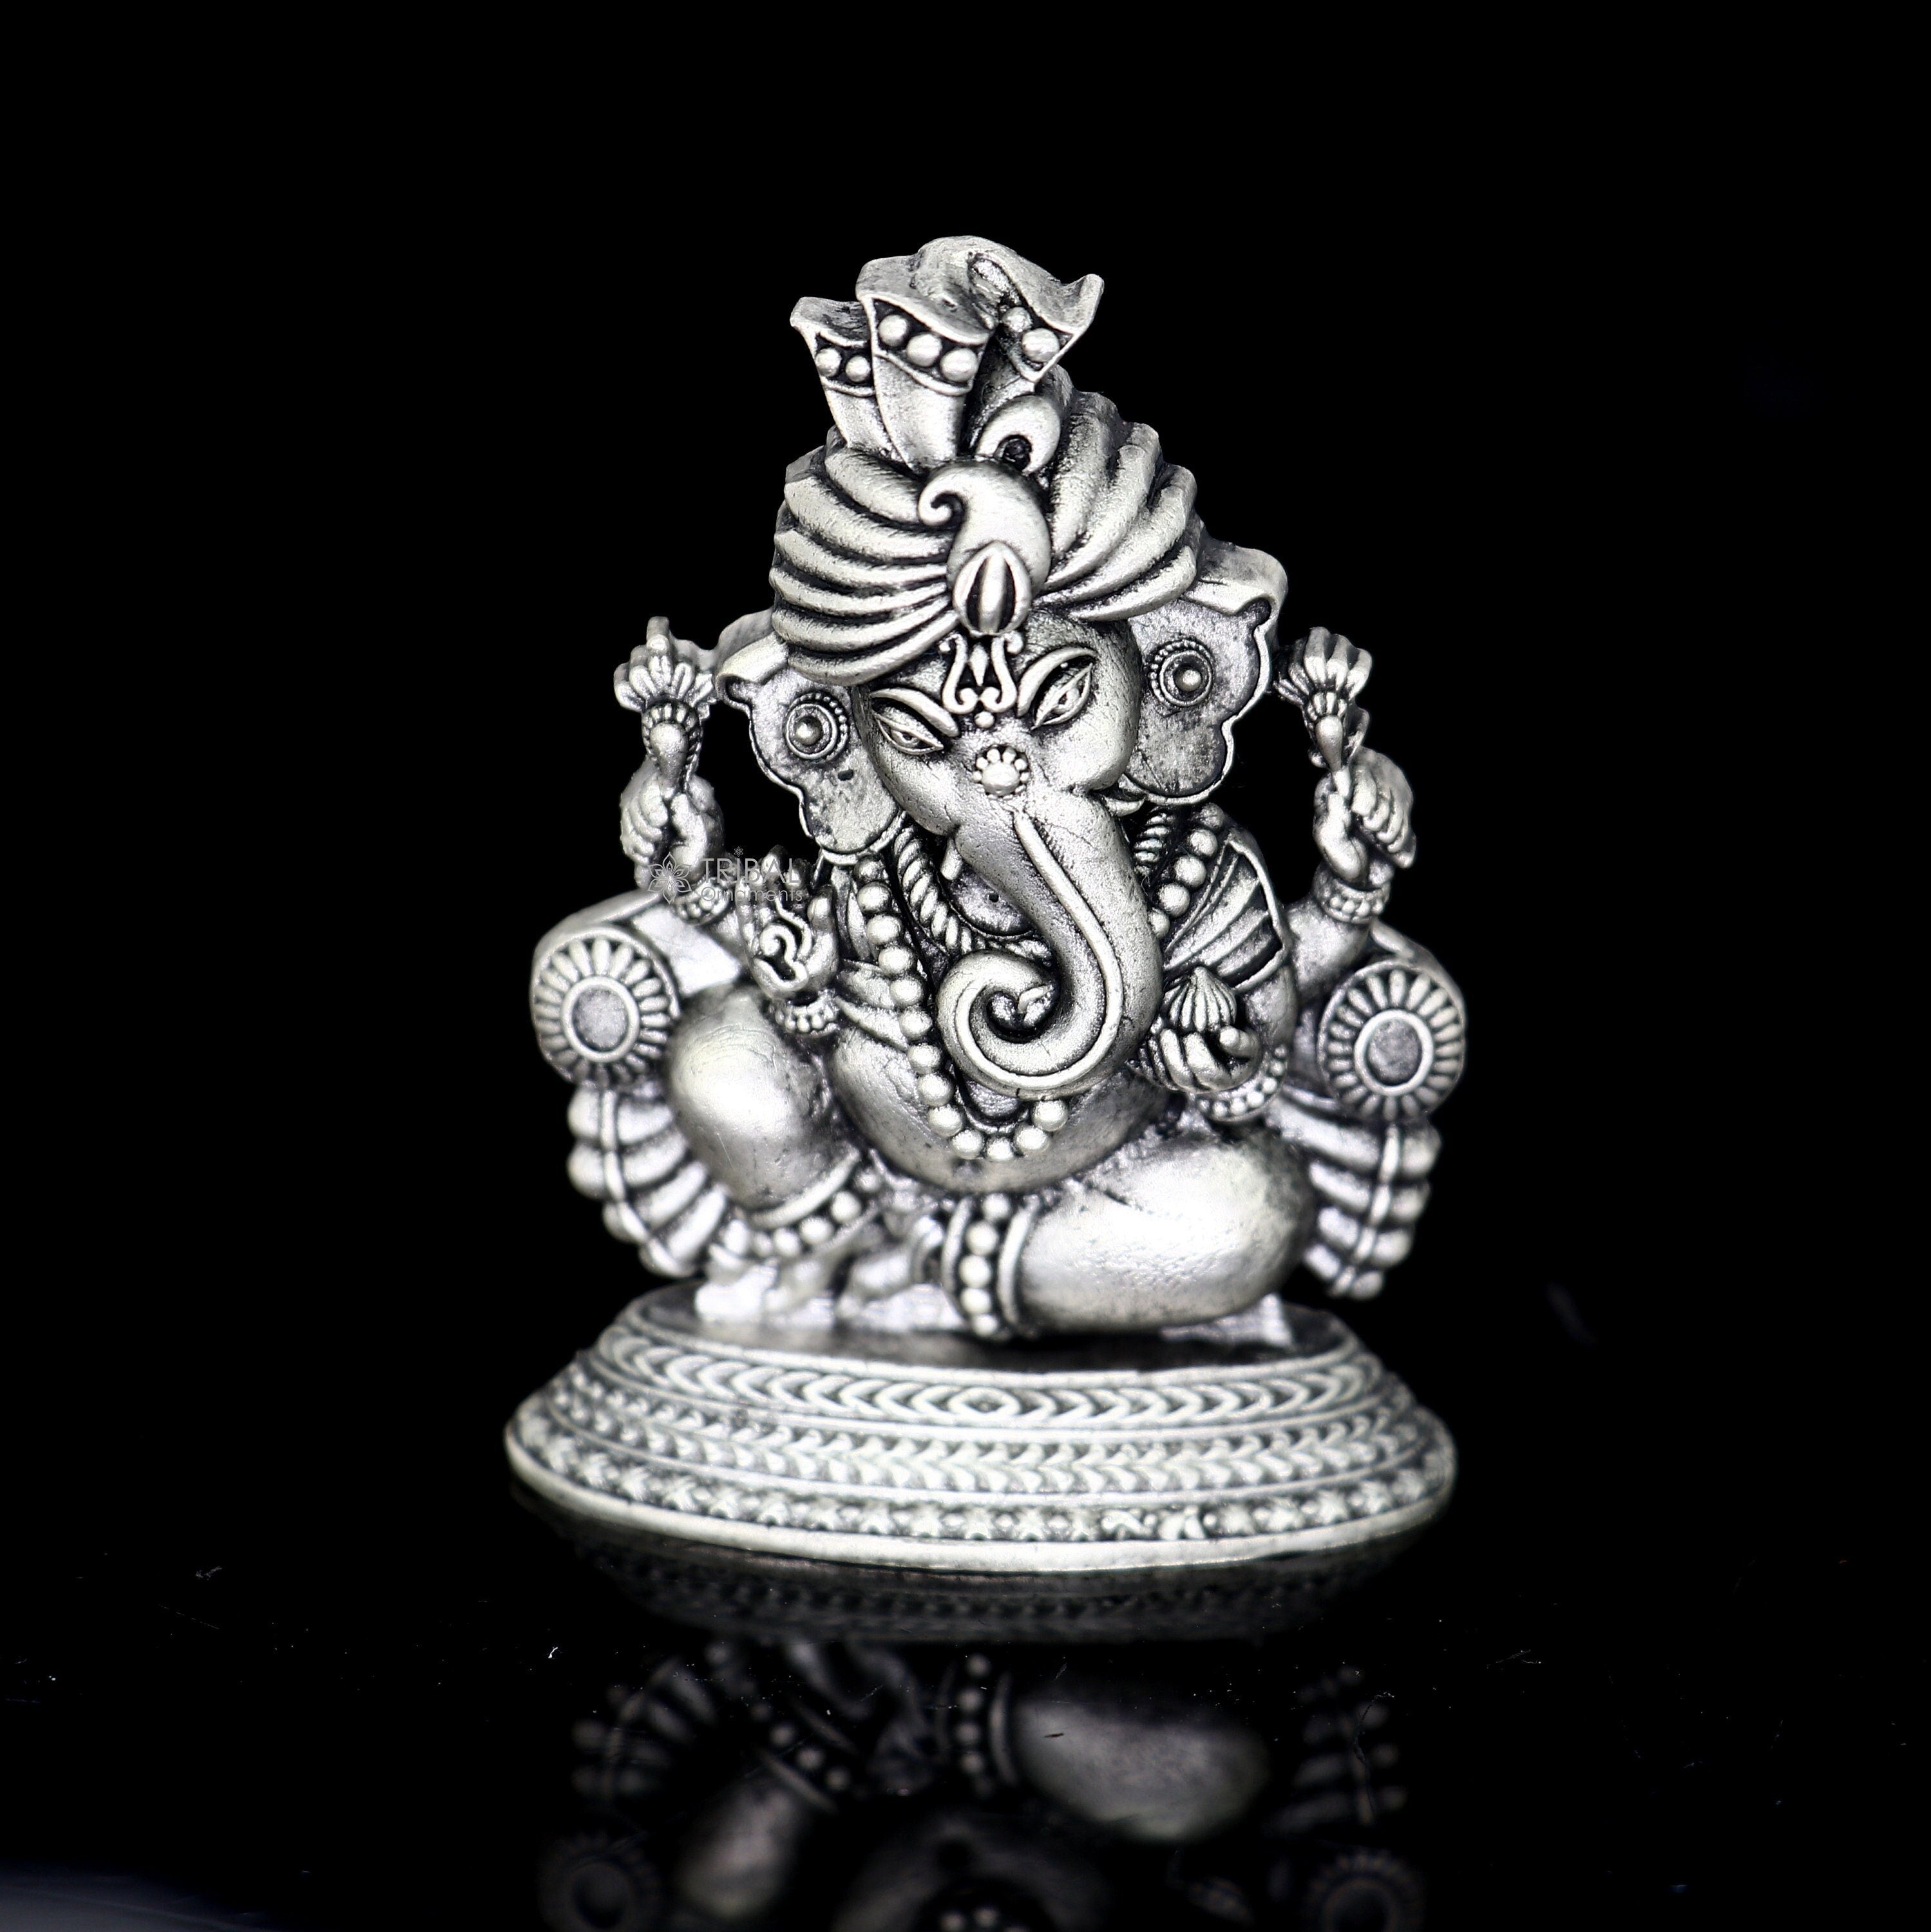 Ganesh Statue Ganesha Idol In Cabinet Ganpati Murti For Car Dashboard /  Home / Office / Temple / Decor / Gift / Spiritual / Pooja Item Decorative  Showpiece - Silver Palace